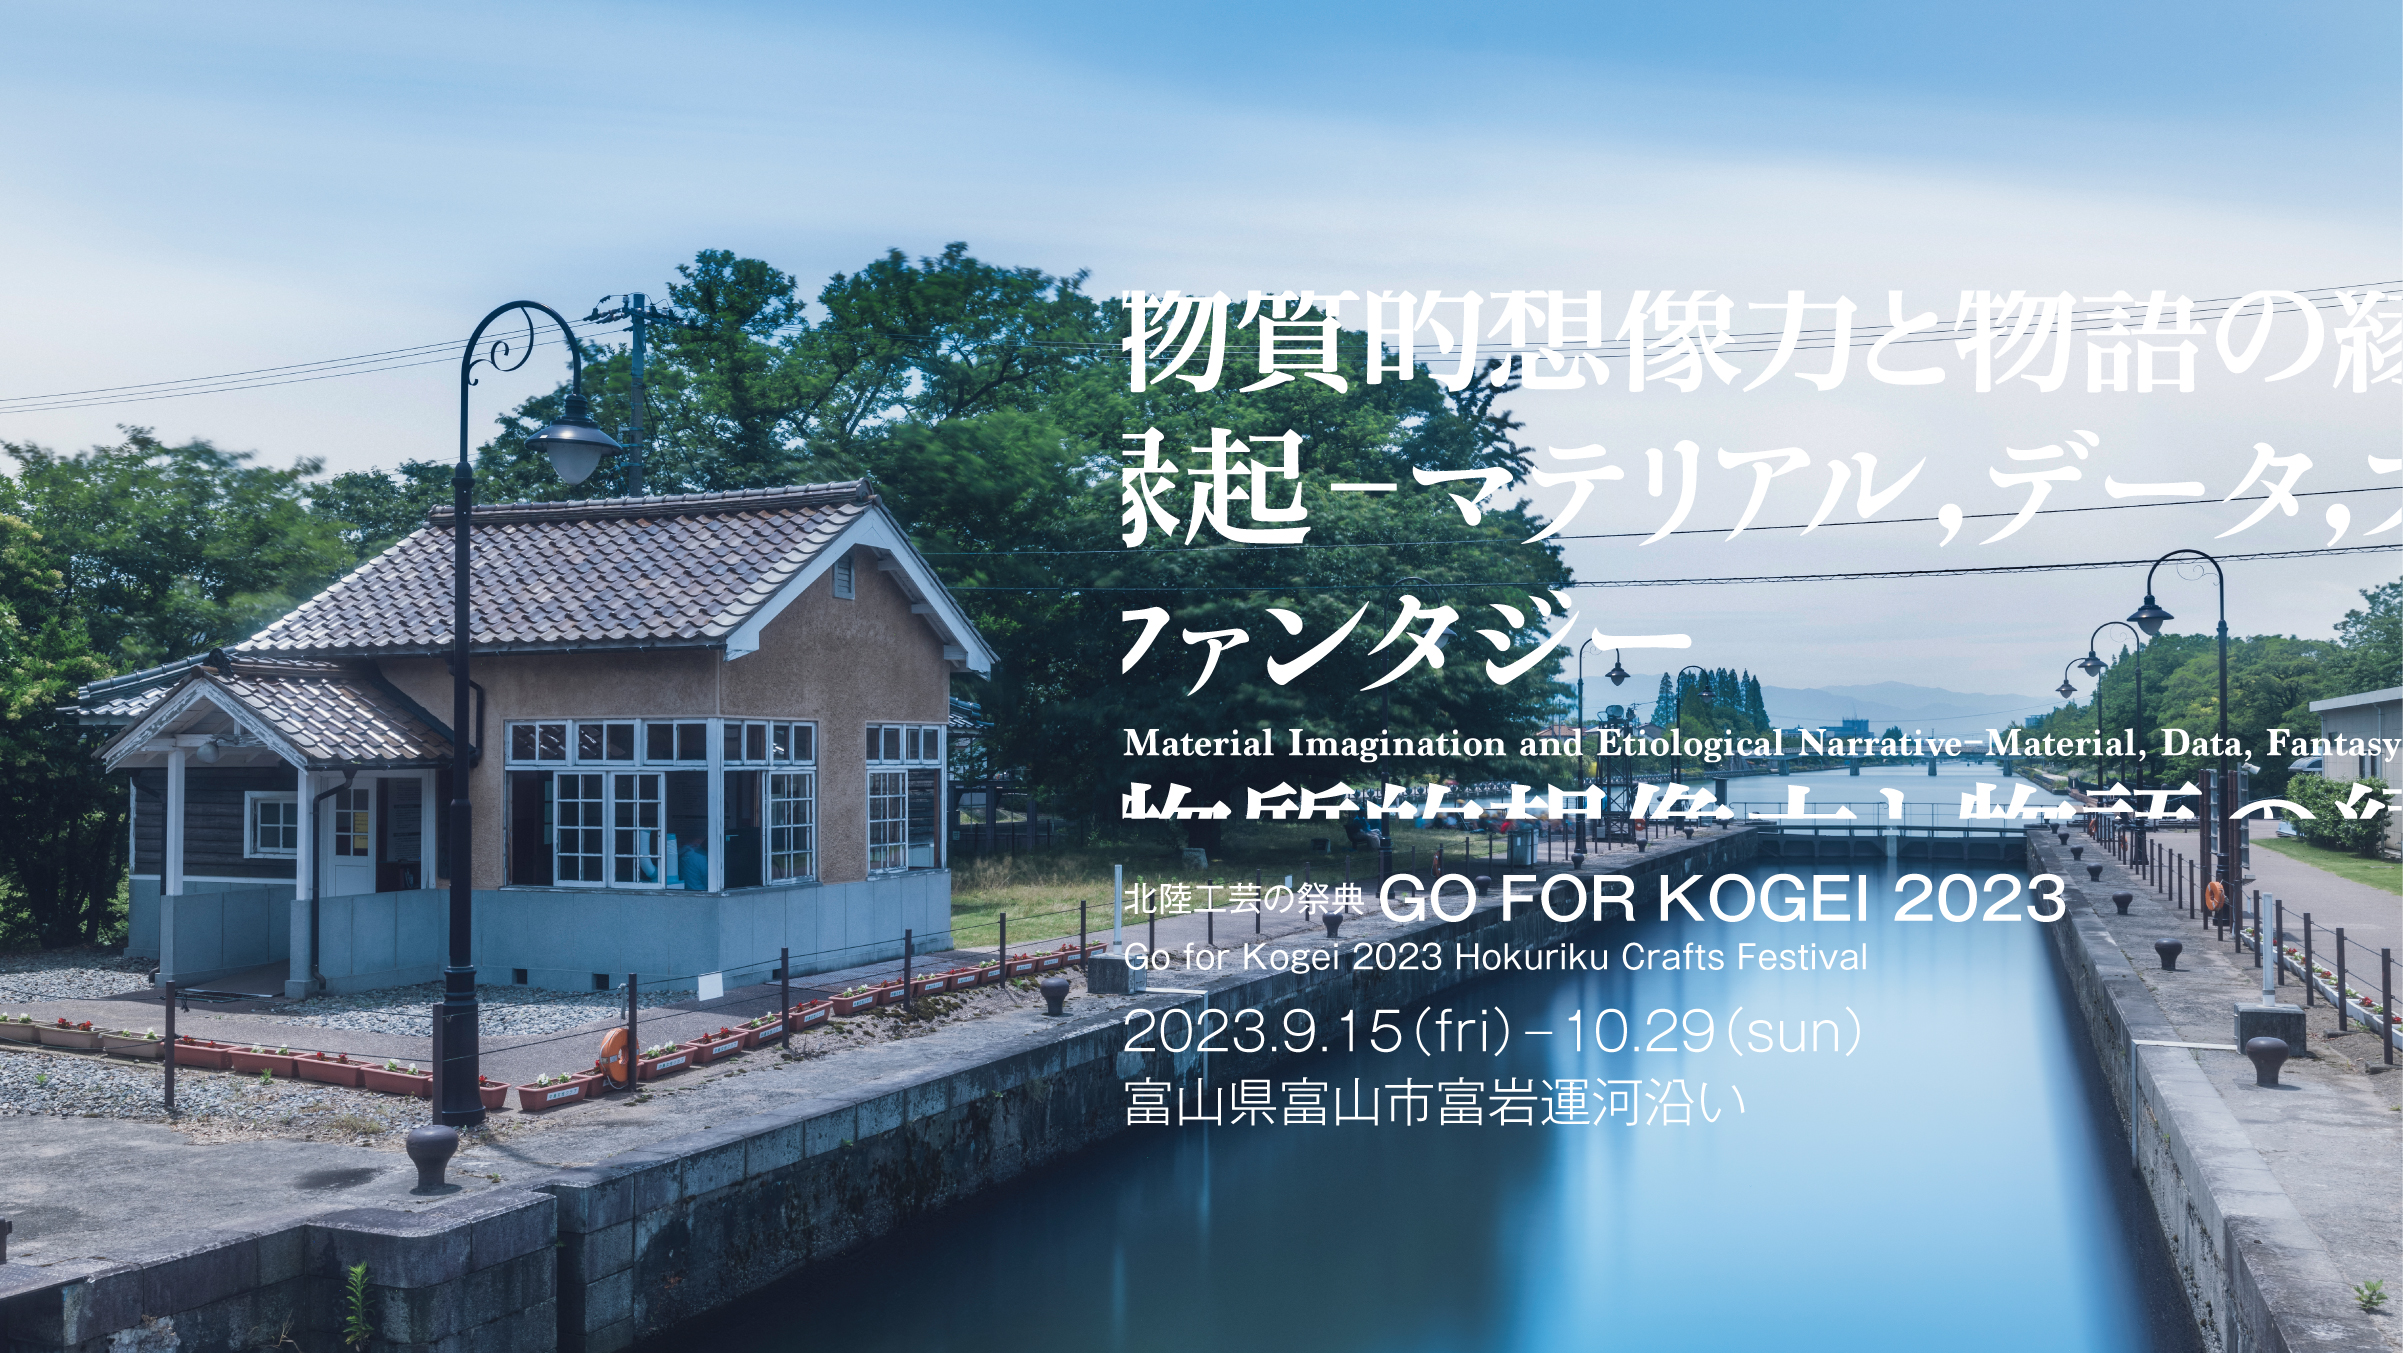 北陸工芸の祭典 GO FOR KOGEI 2023<br>「物質的想像力と物語の縁起 ―マテリアル、データ、ファンタジー」